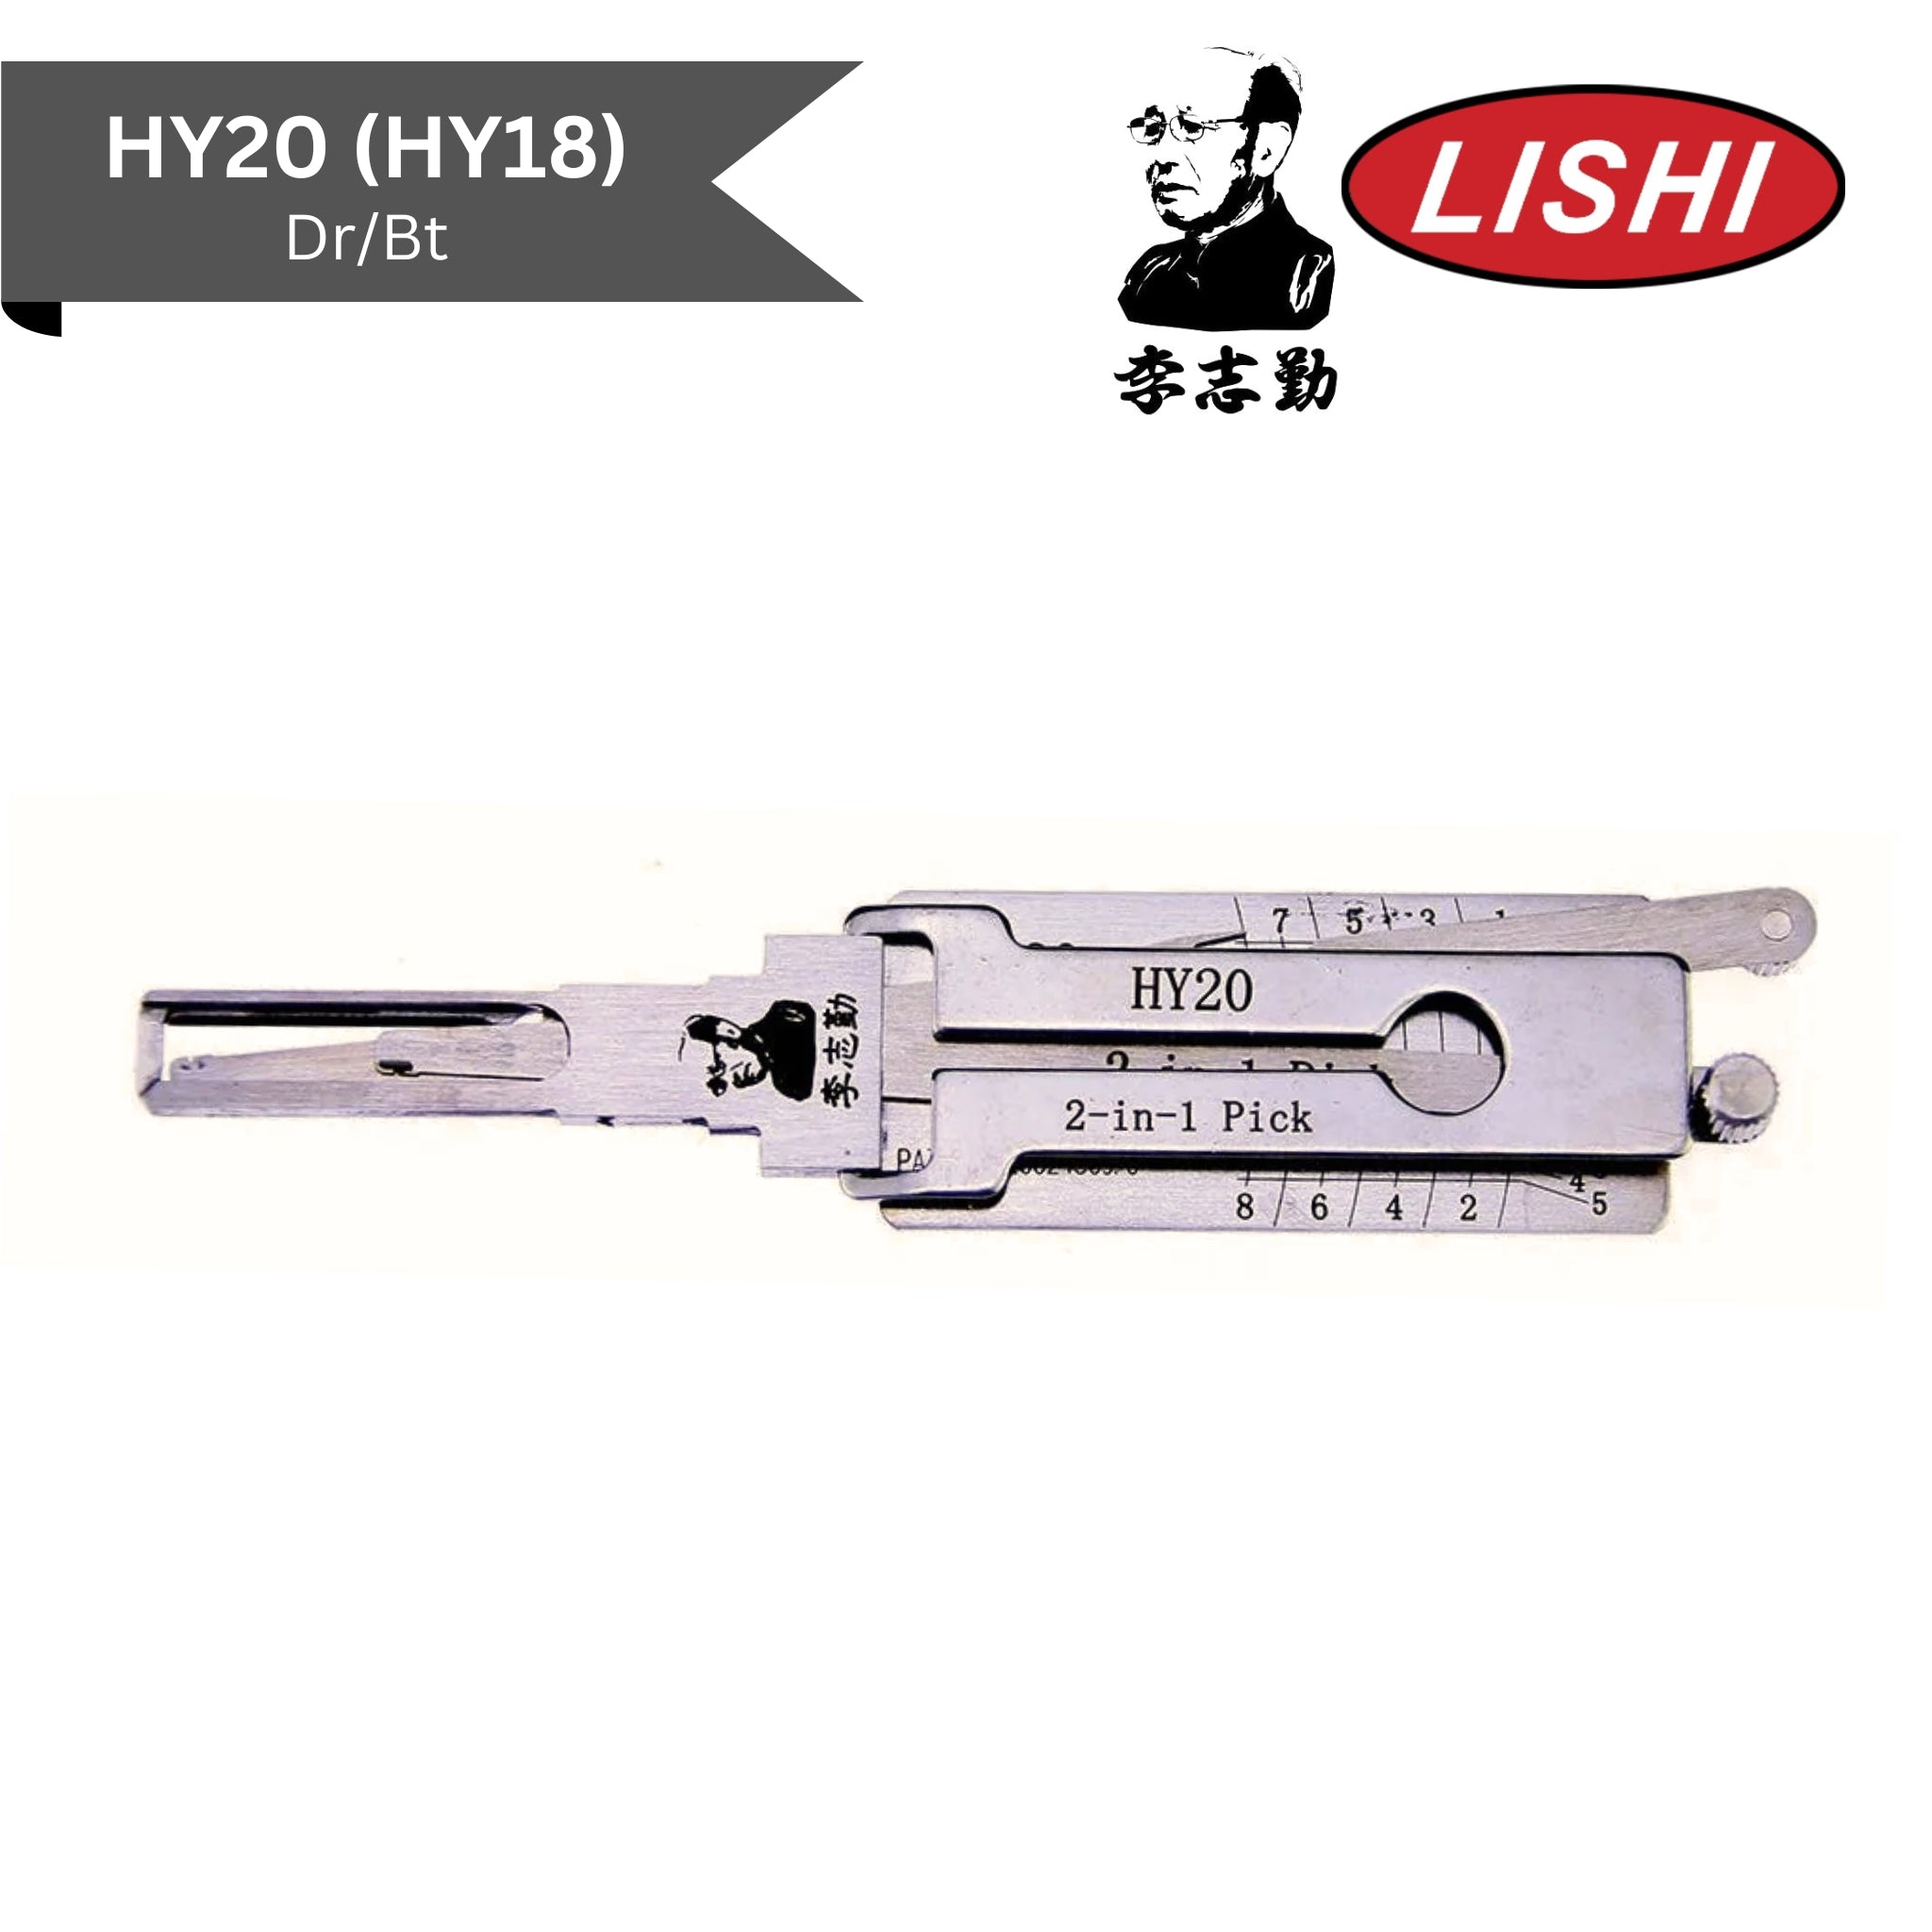 Original Lishi - Hyundai HY20/HY18 (Dr/Bt) - 2-In-1 Pick/Decoder